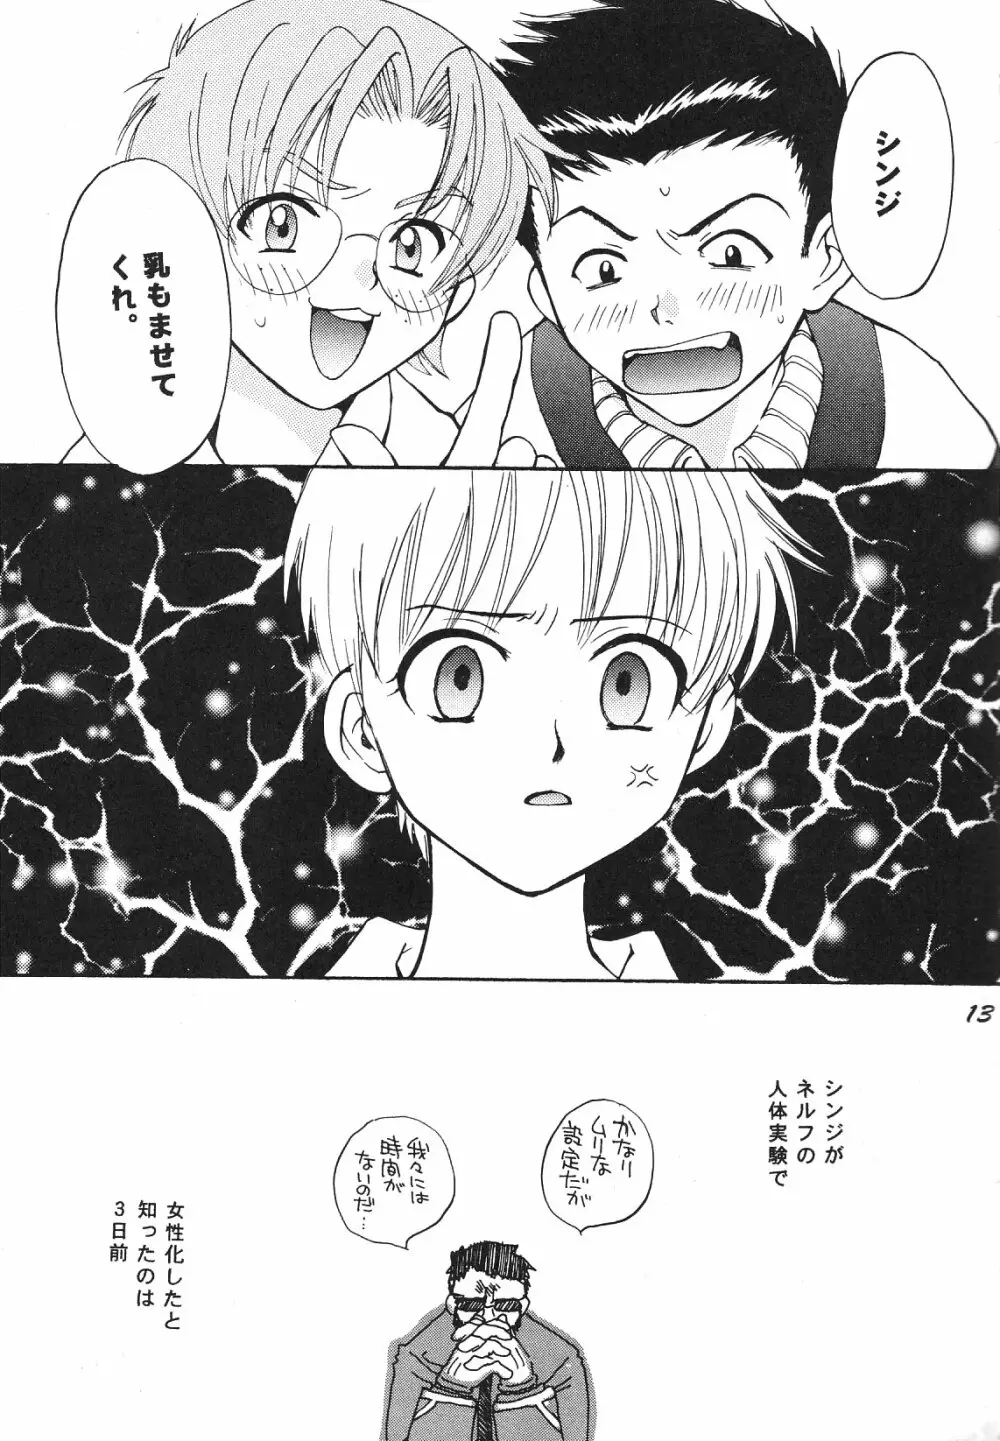 Maniac Juice 女シンジ再録集 ’96-’99 13ページ